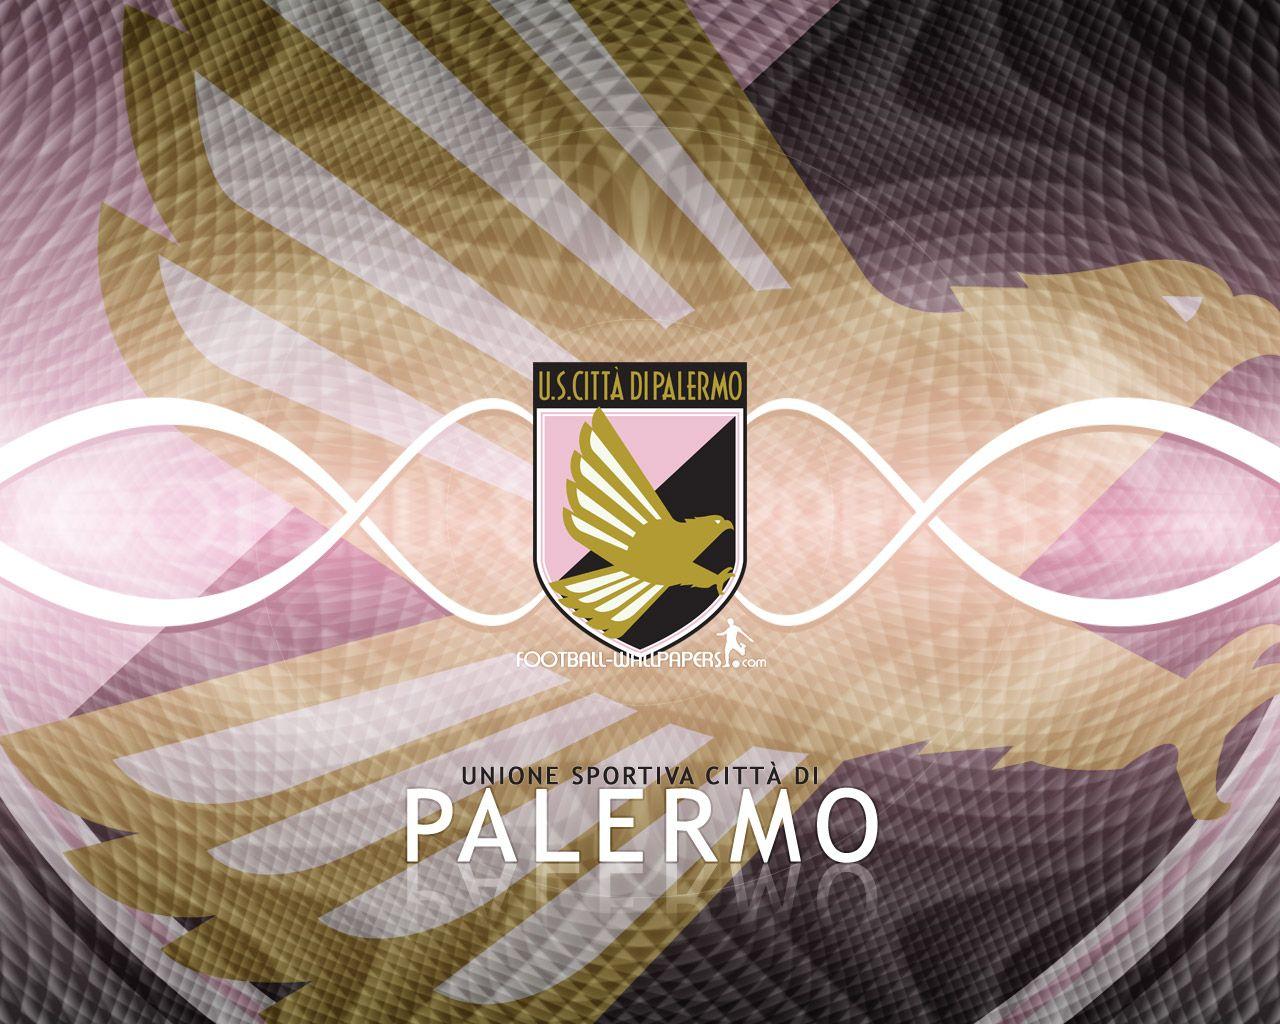 Palermo Logo - Image - Palermo logo 002.jpg | Football Wiki | FANDOM powered by Wikia